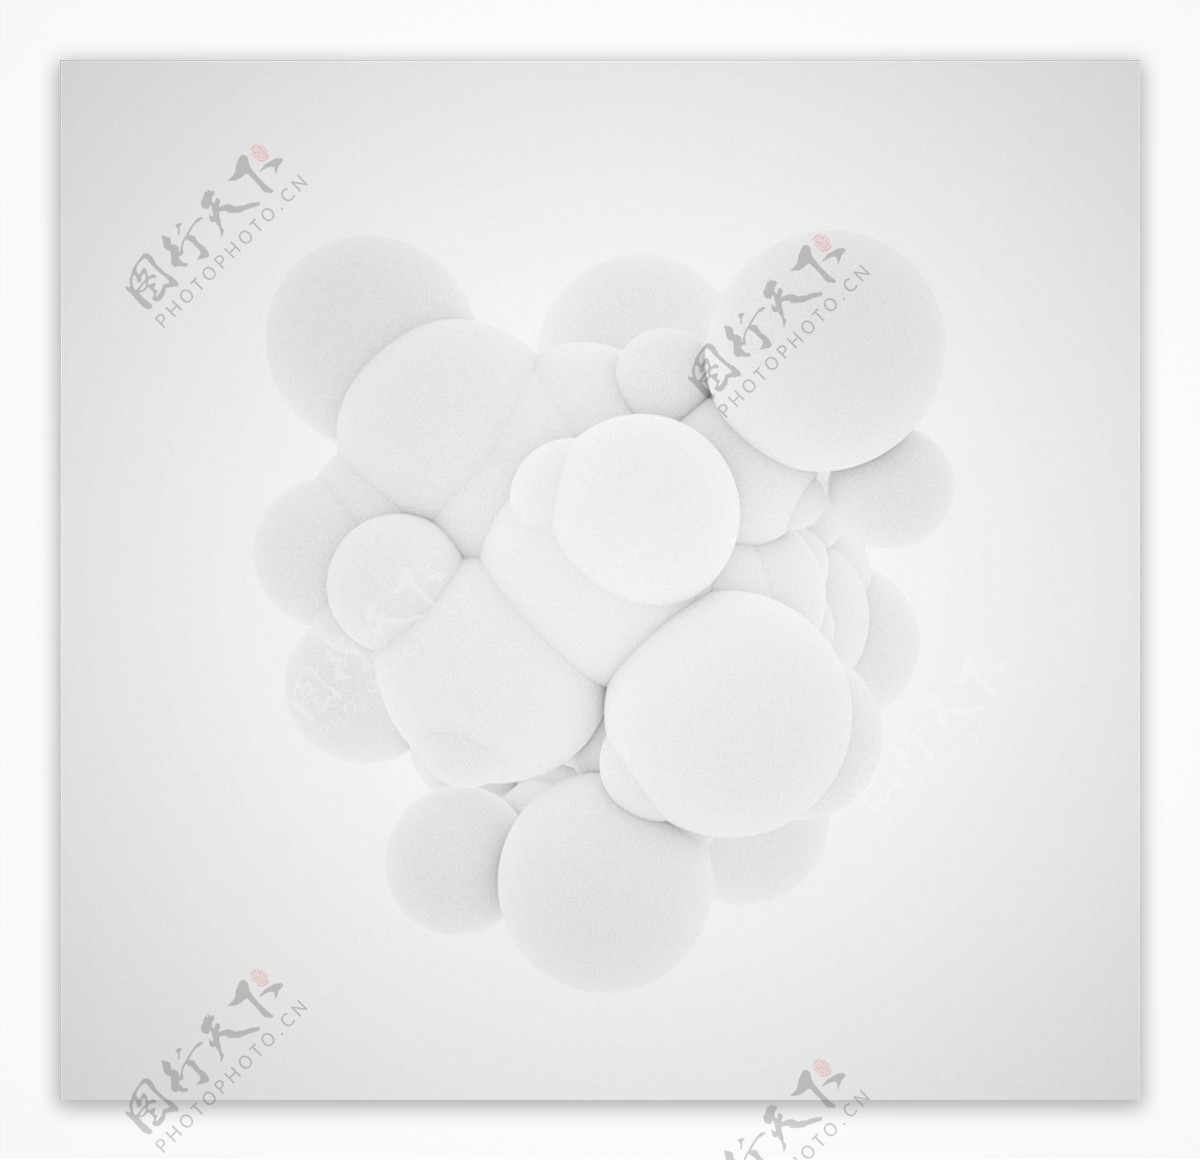 C4D模型白色球体结构图片